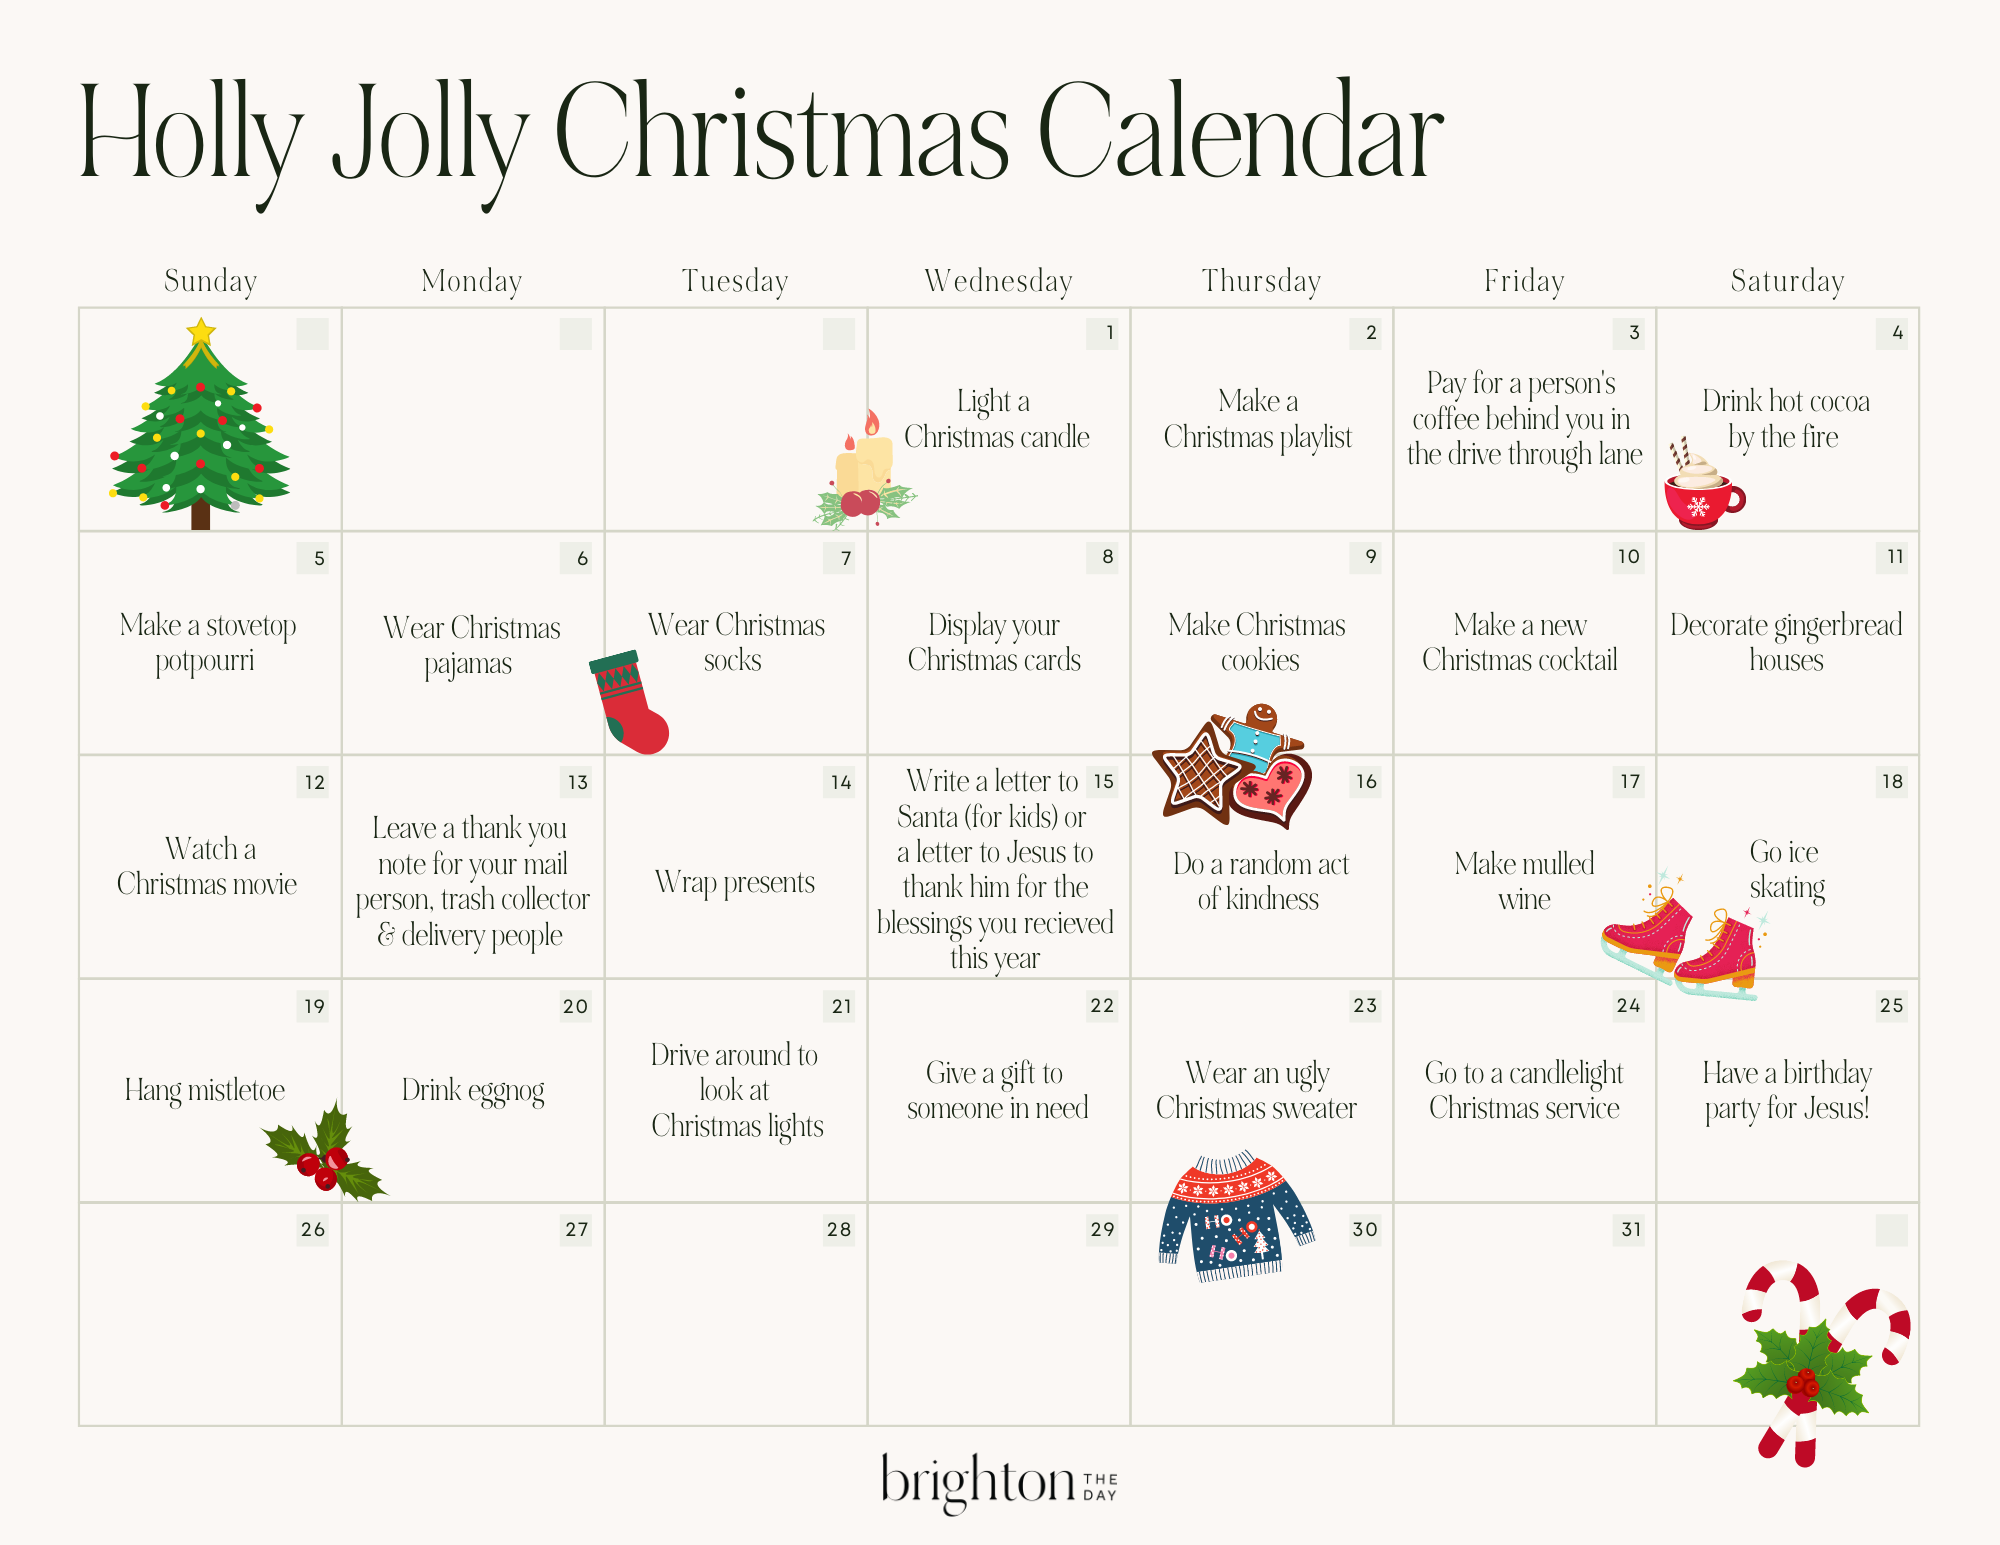 Brighton Butler's Christmas Activity Calendar